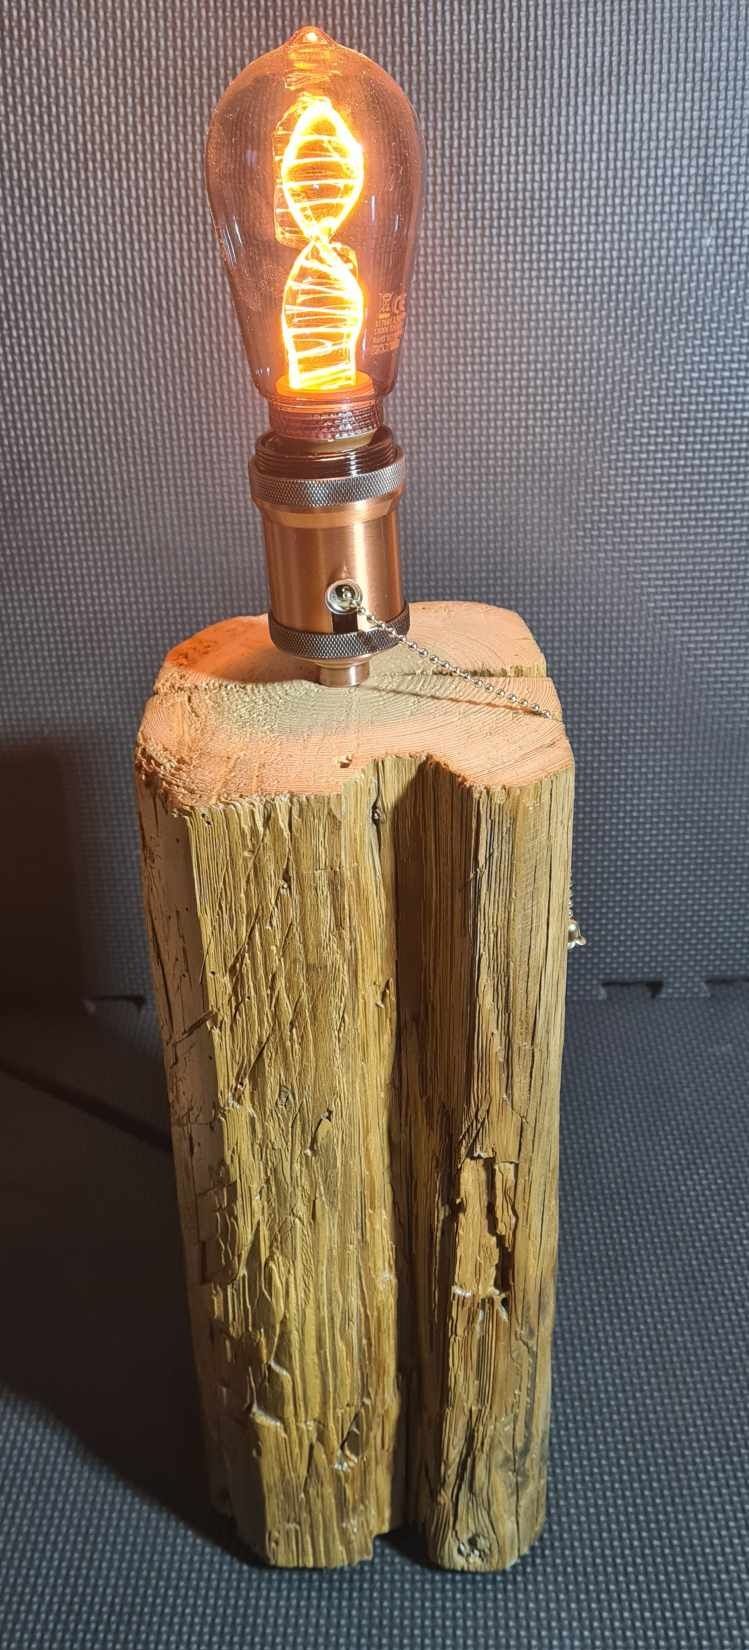 Lampa ze starego drewna